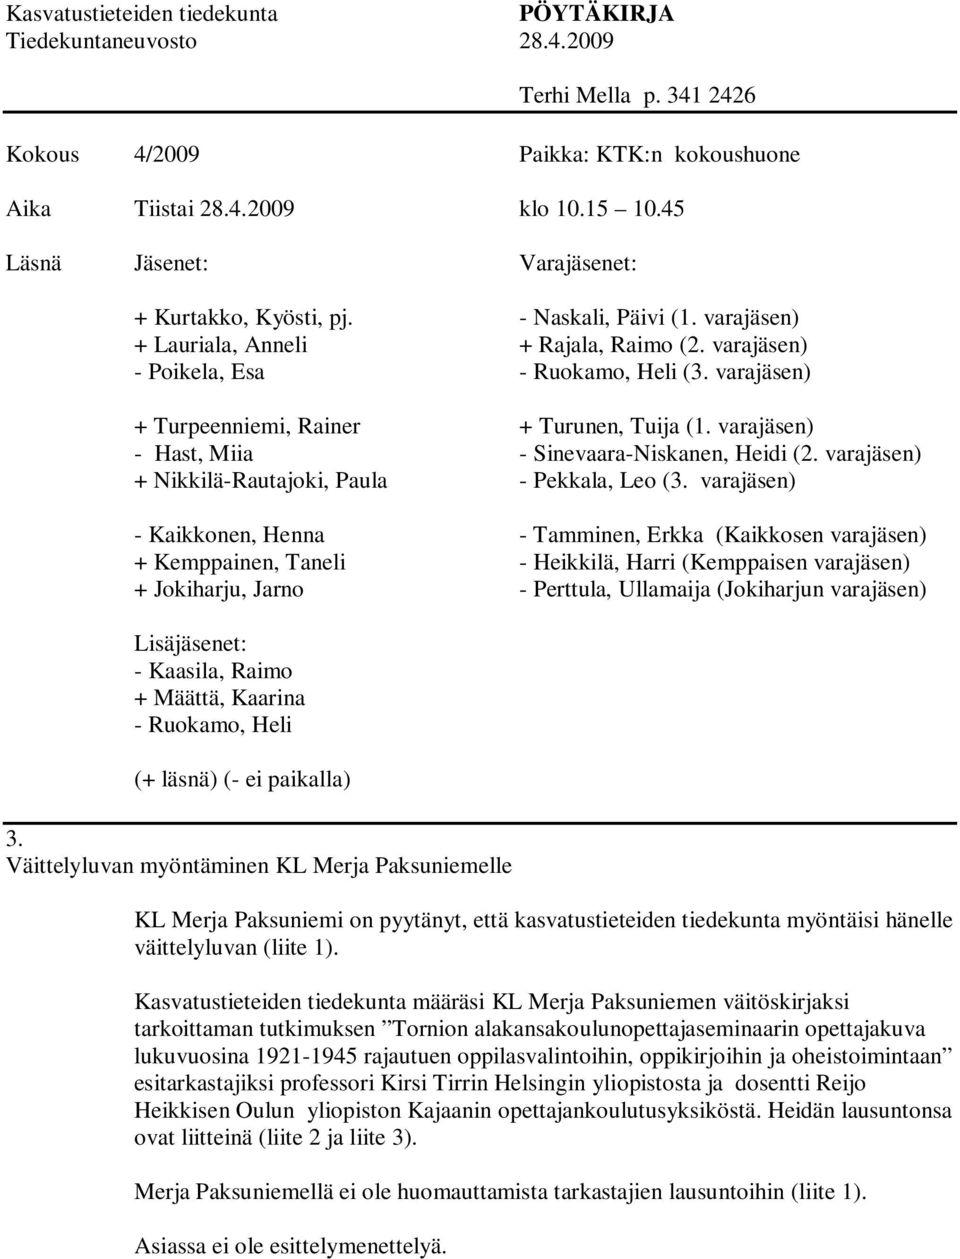 Kasvatustieteiden tiedekunta määräsi KL Merja Paksuniemen väitöskirjaksi tarkoittaman tutkimuksen Tornion alakansakoulunopettajaseminaarin opettajakuva lukuvuosina 1921-1945 rajautuen